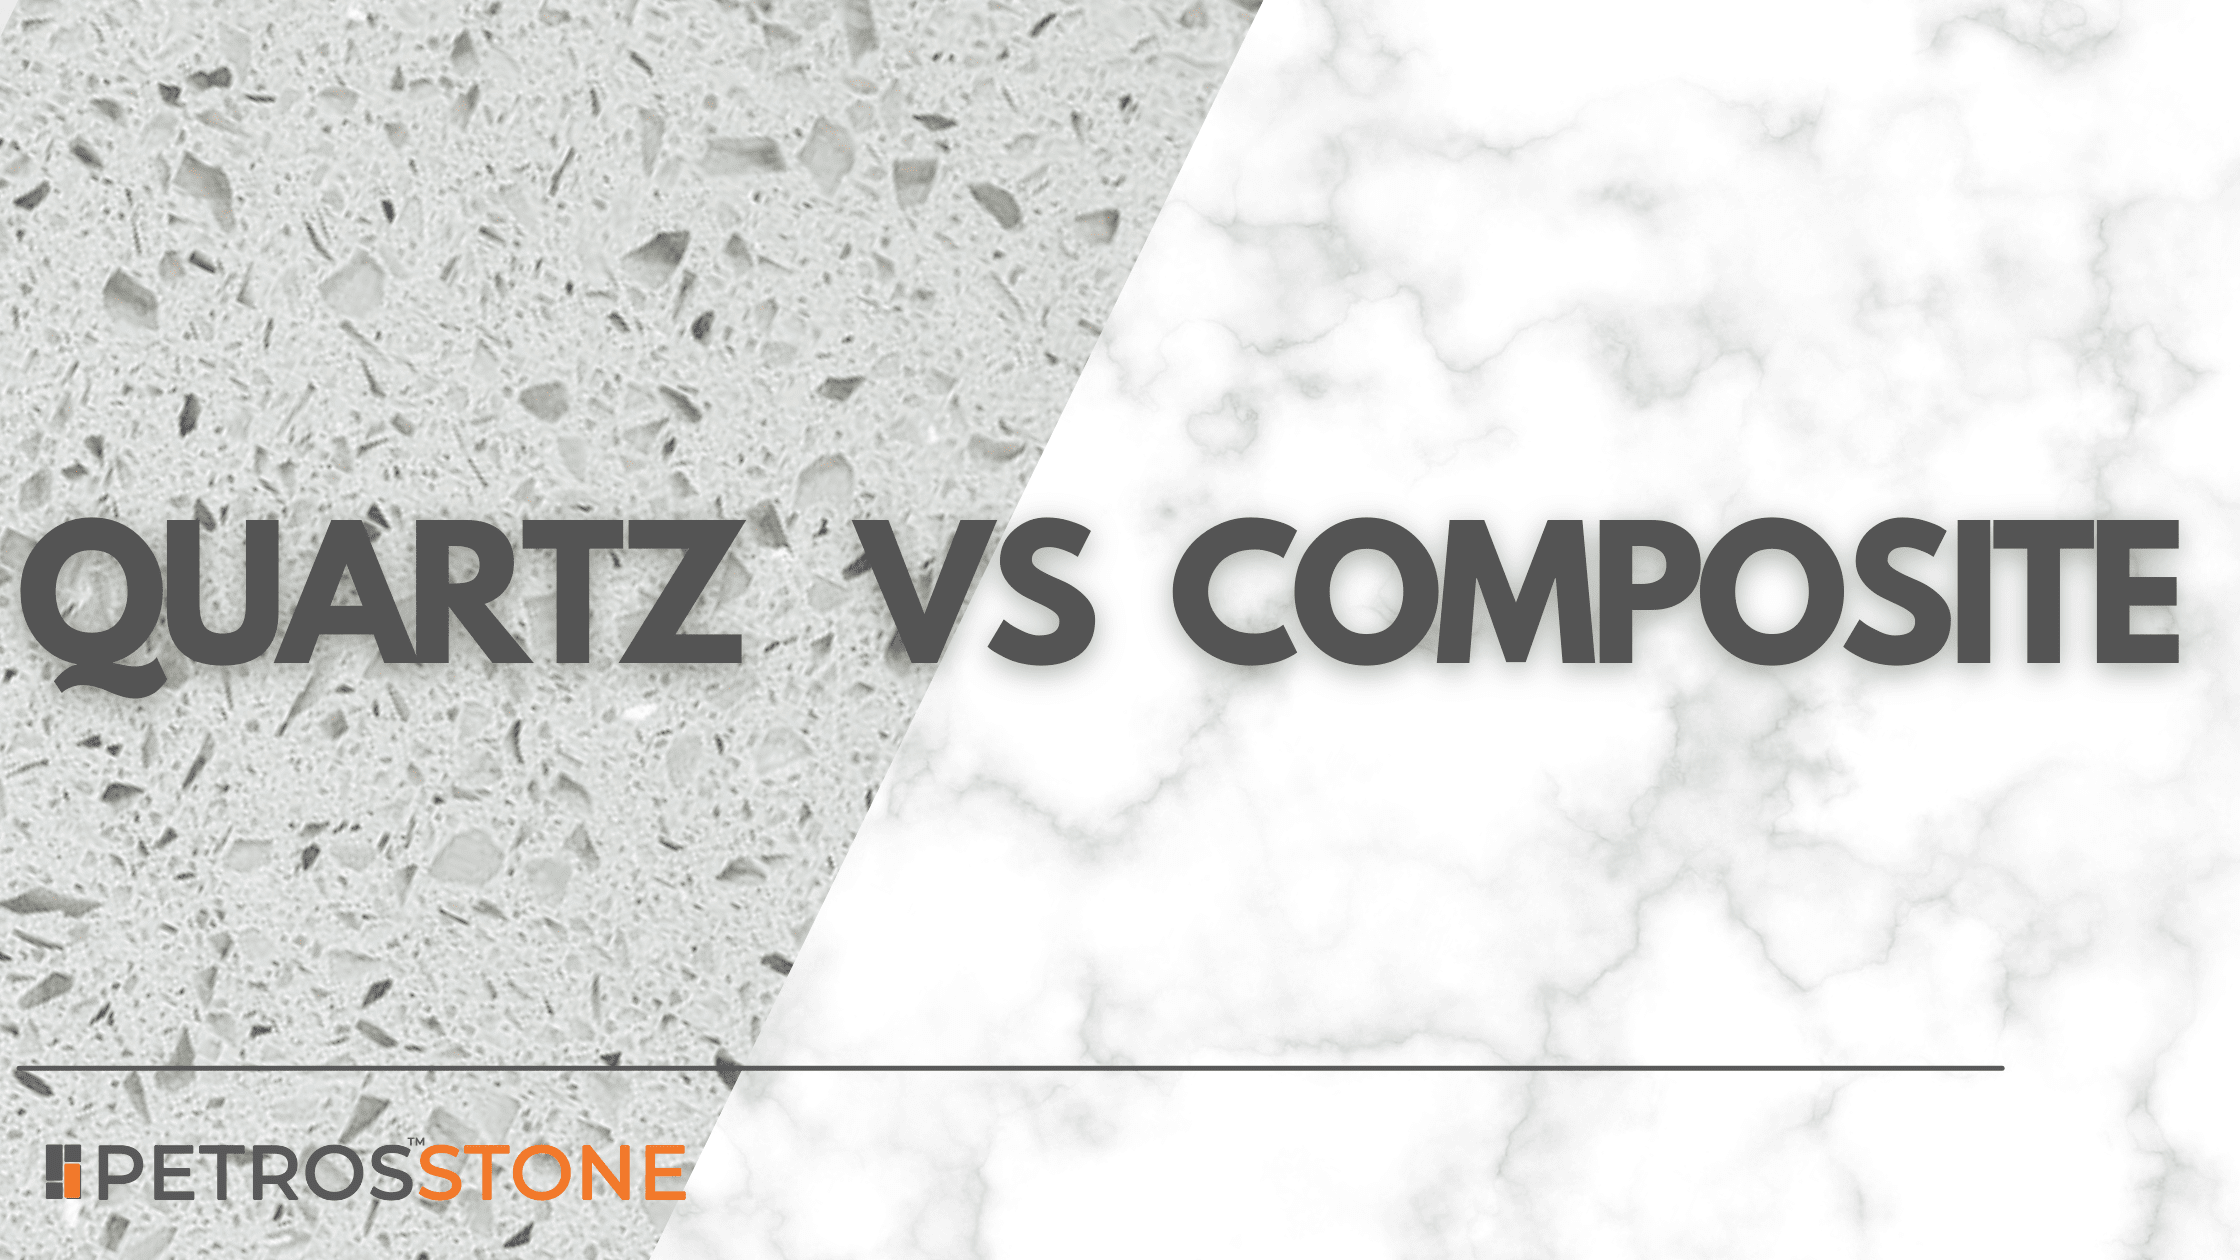 Quartz vs Composite Blog Cover